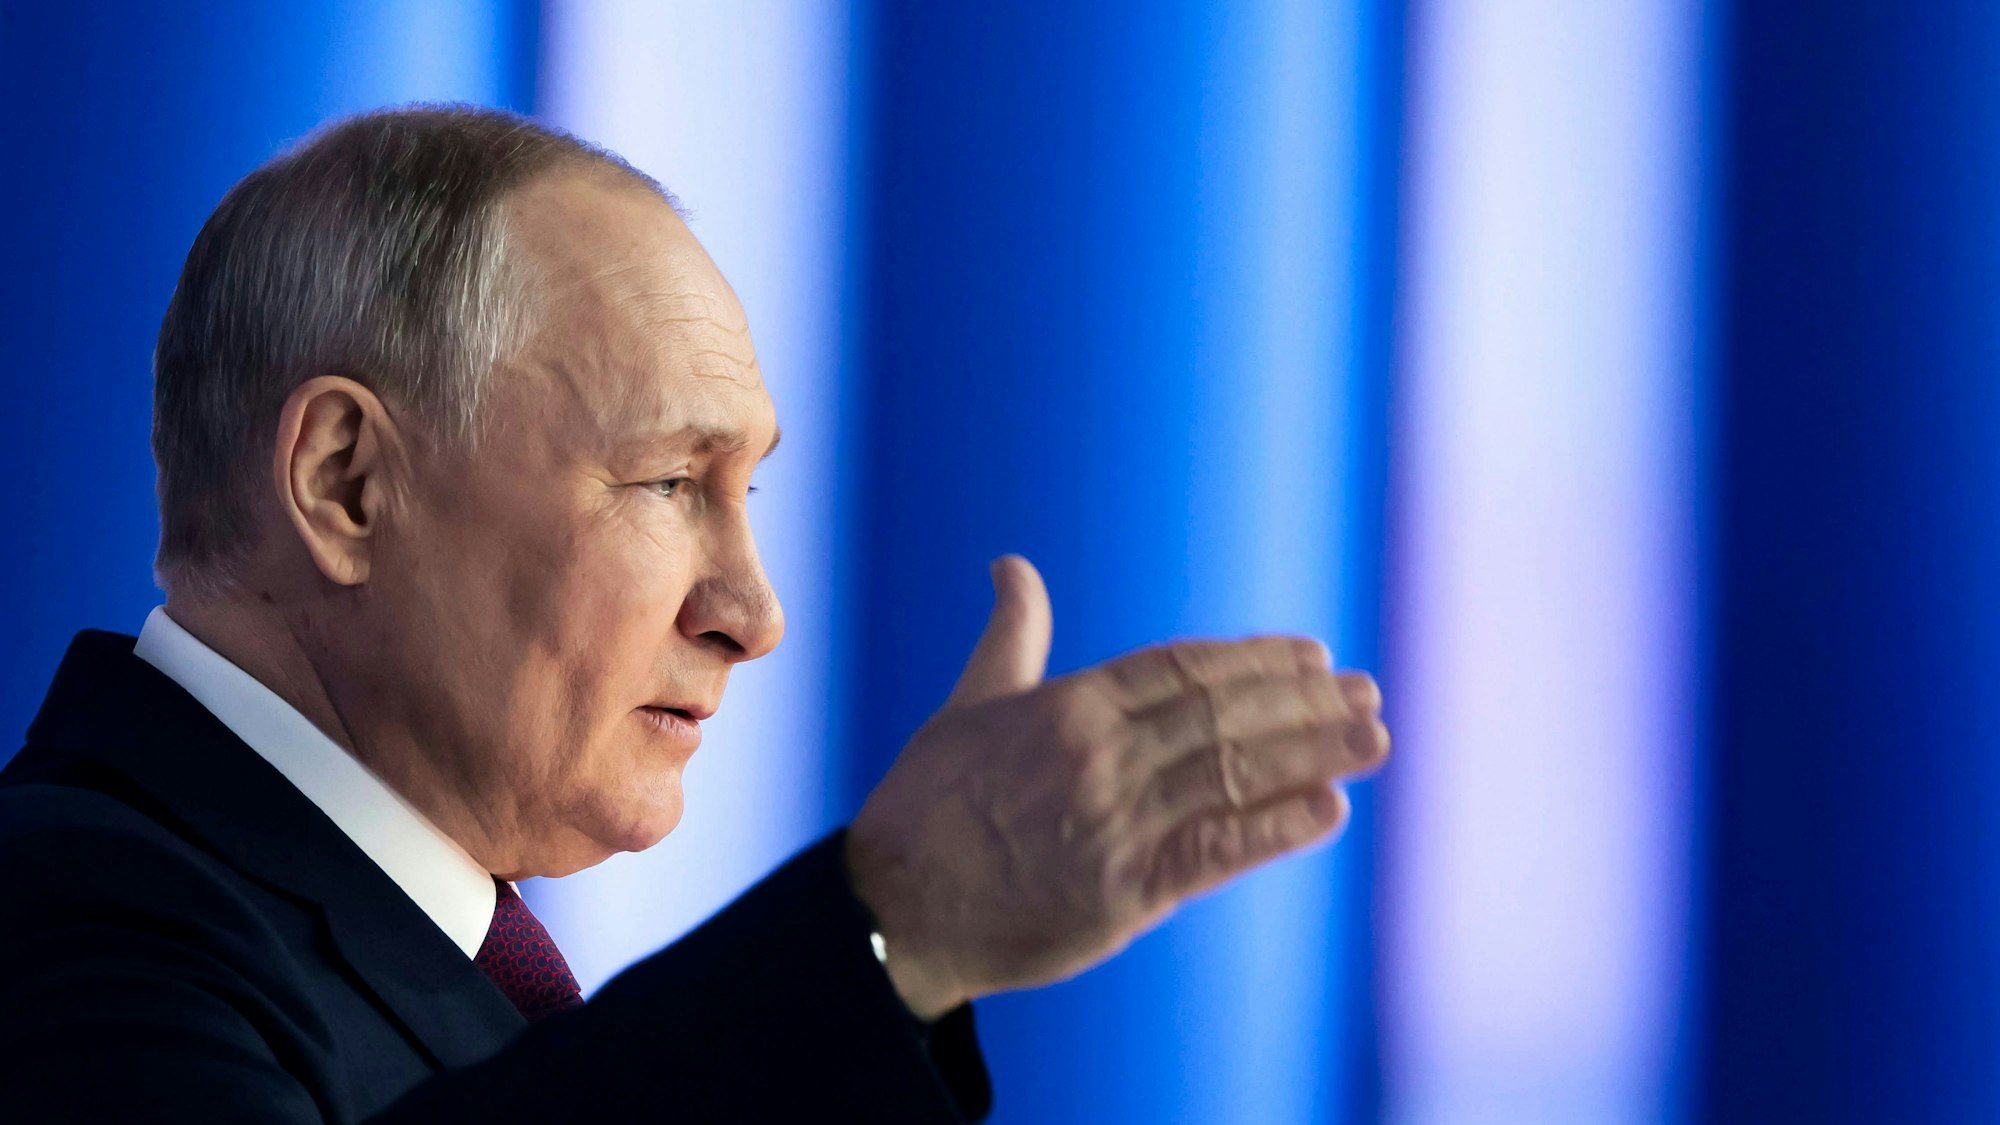 Isolierter Herrscher: Mit dem Krieg in der Ukraine hat Wladimir Putin das russische Verhältnis zum Westen zerstört.